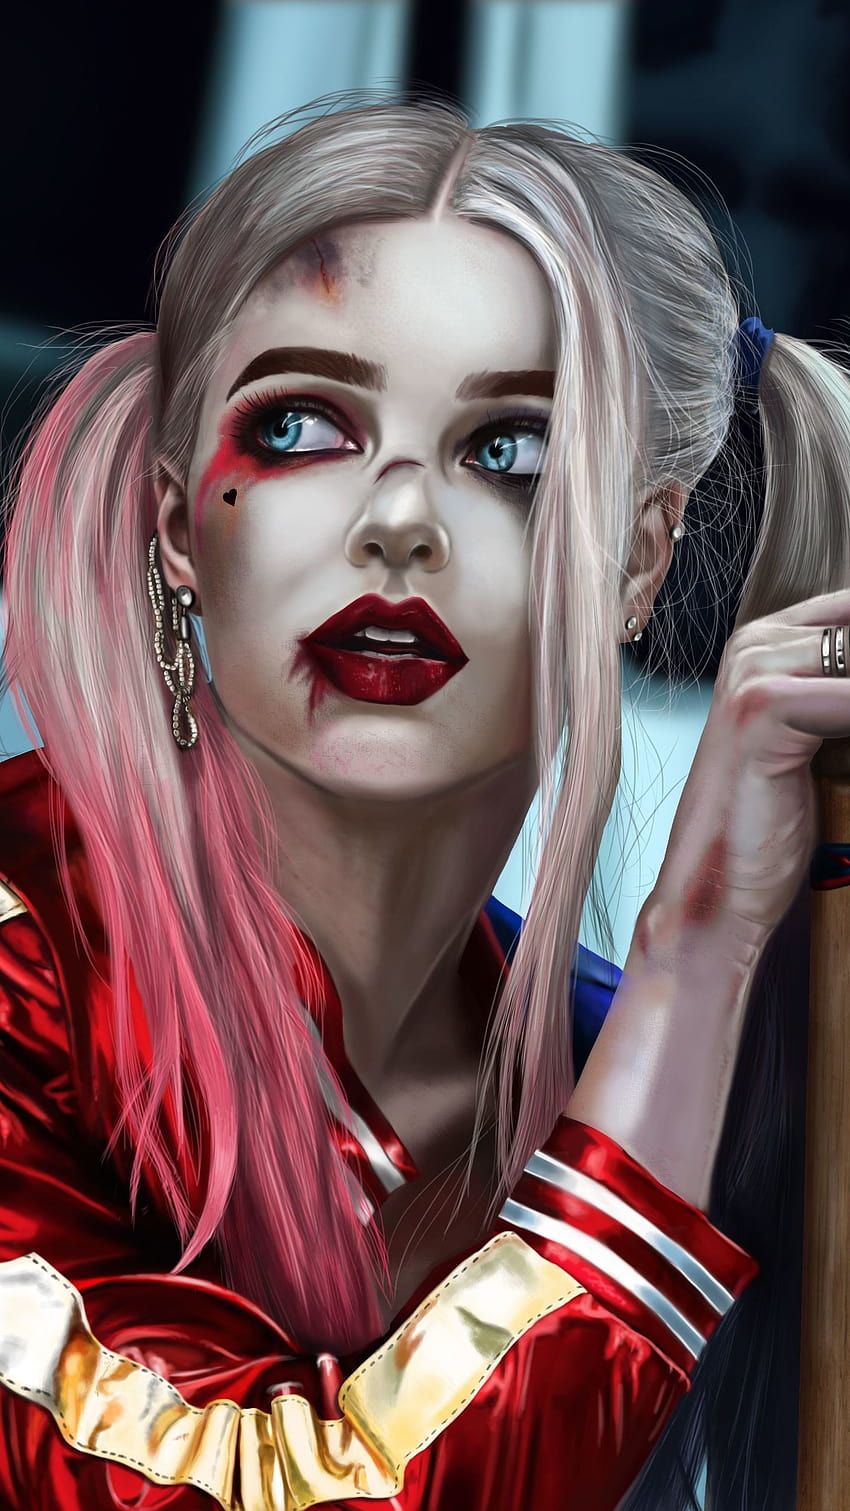 Pin on Harley Quinn, joker girl HD phone wallpaper | Pxfuel